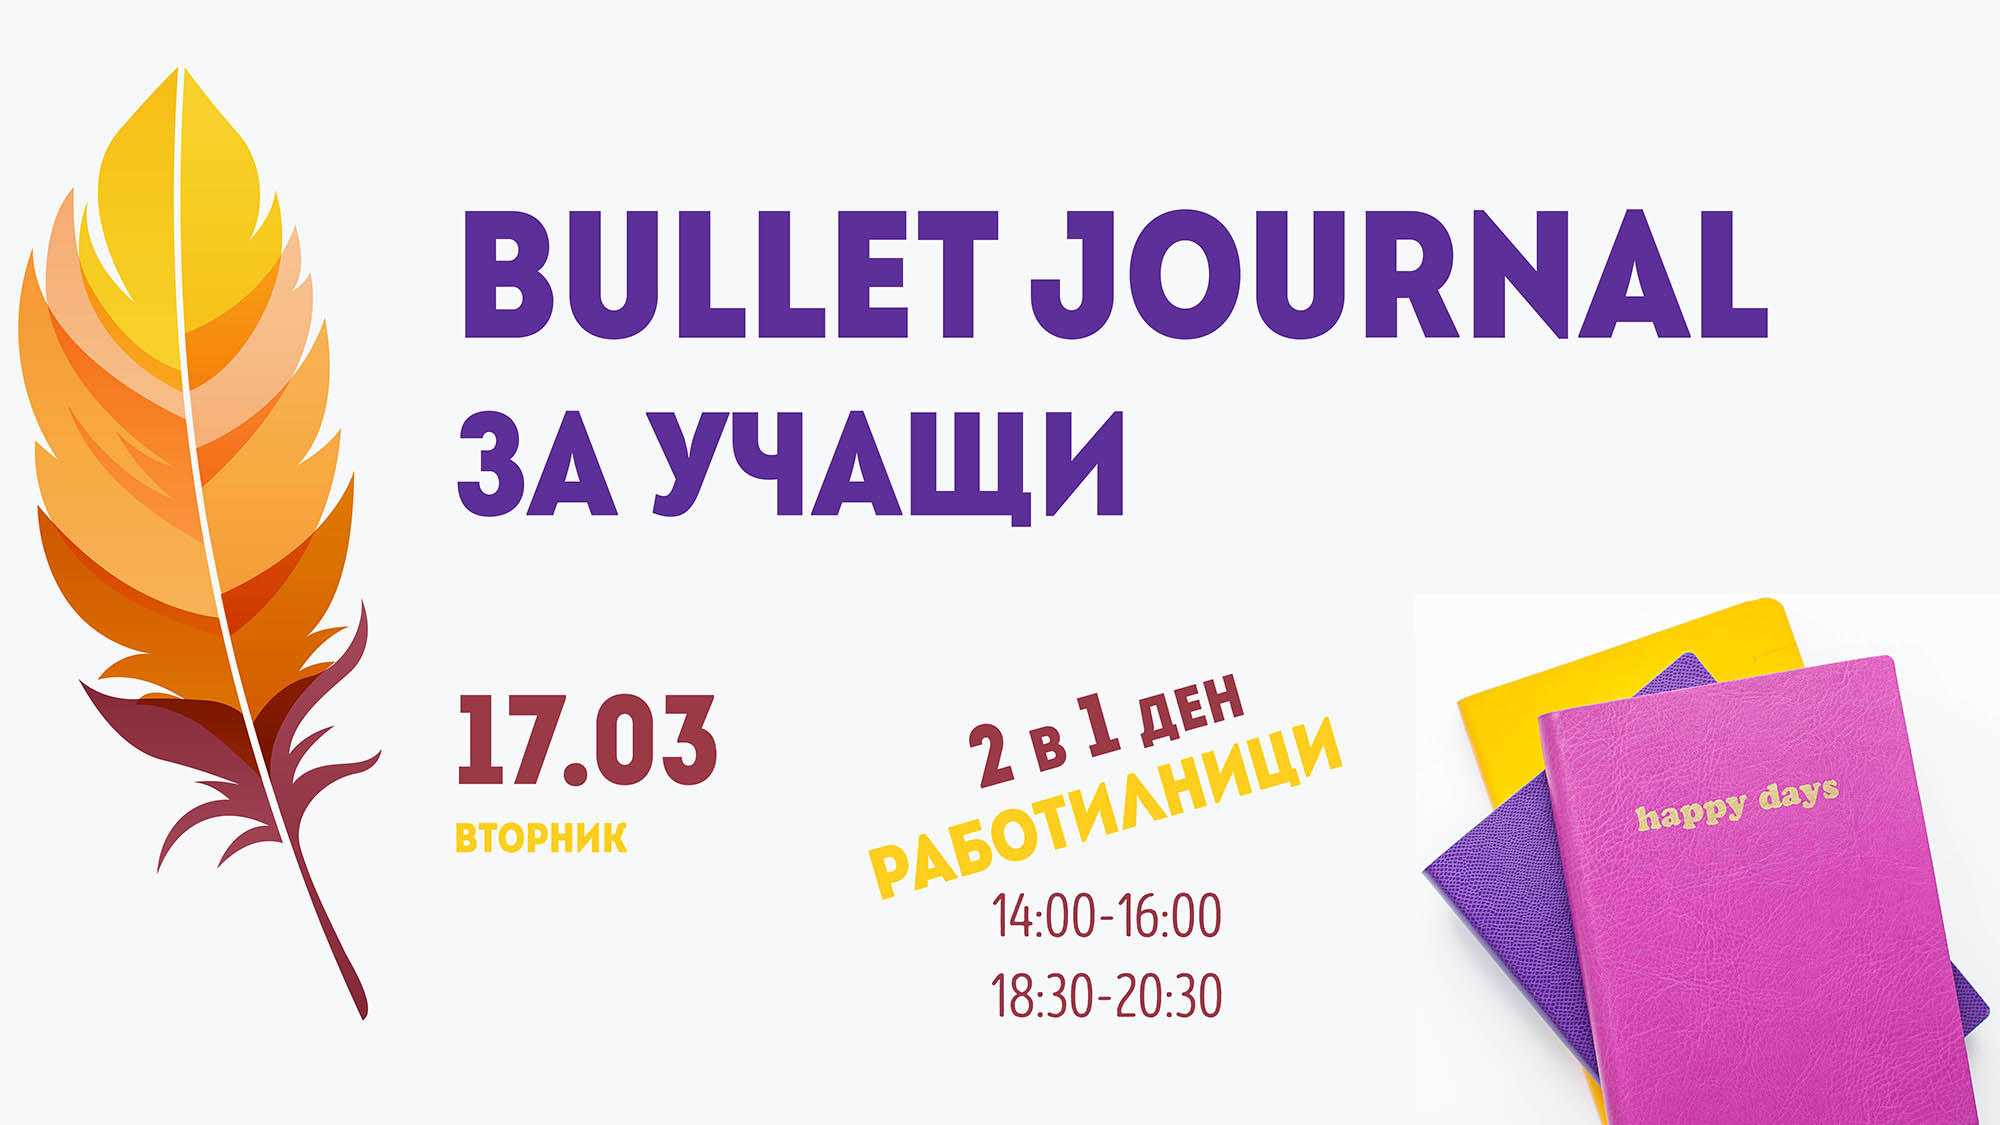 Bullet Journal за учащи